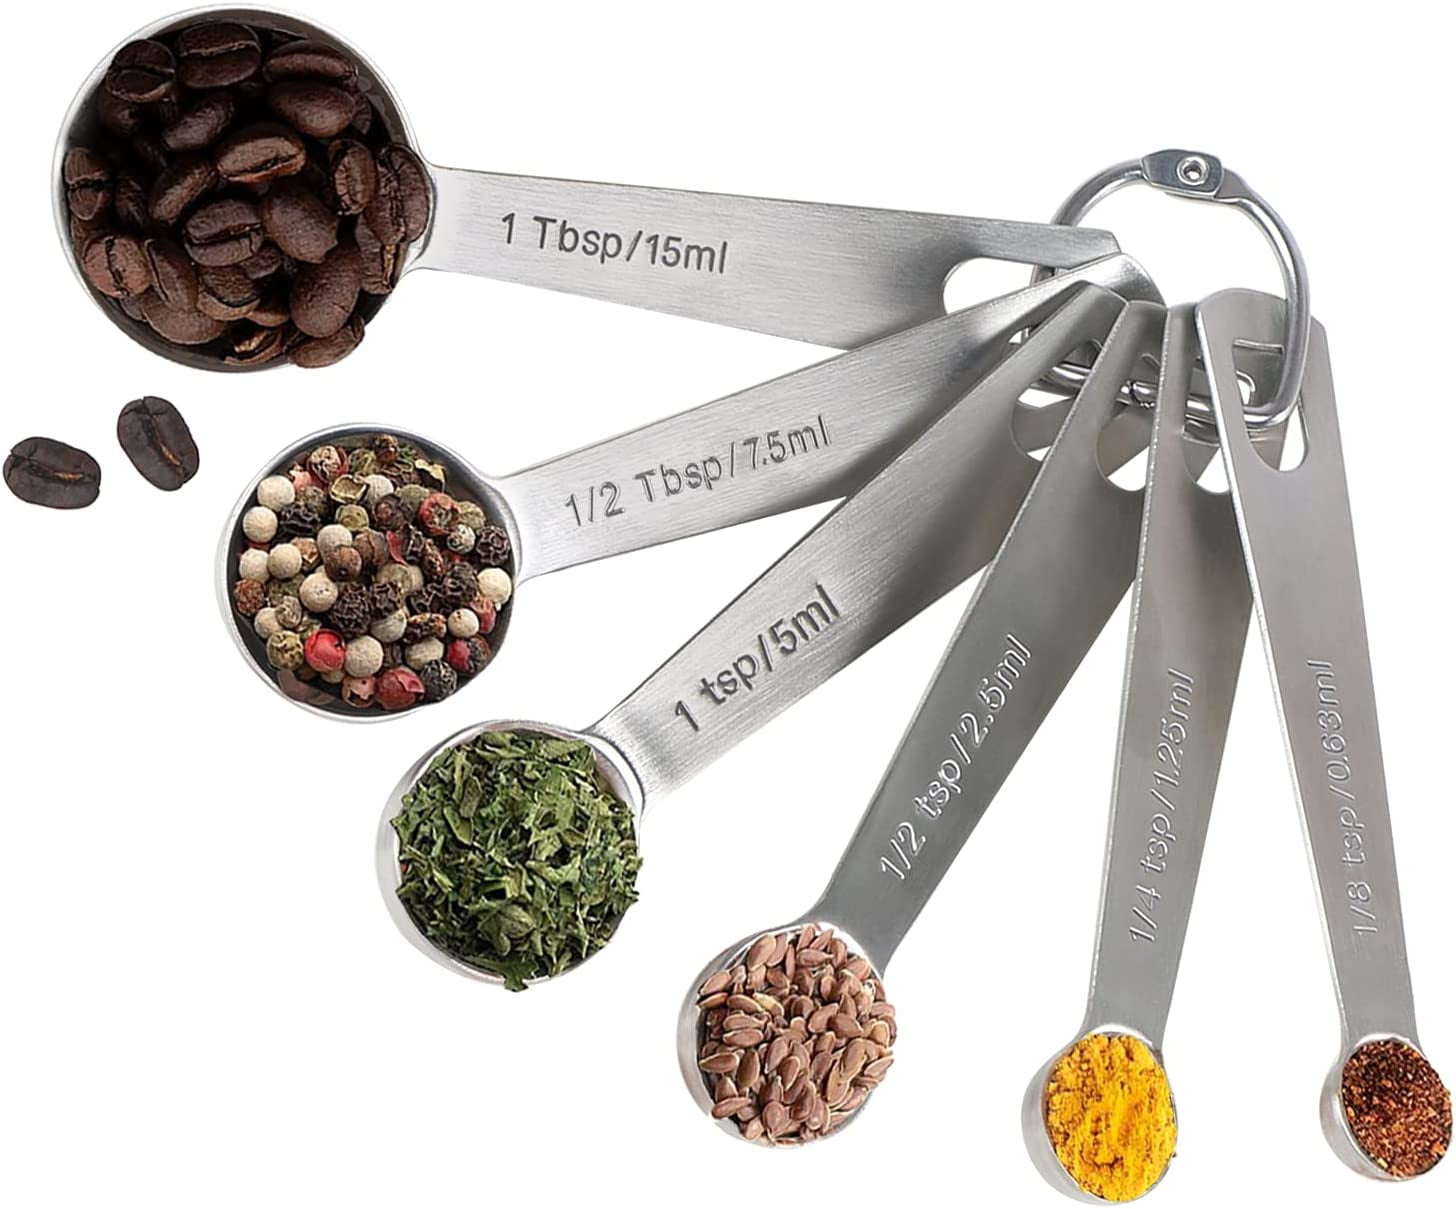  Measuring Spoons: U-Taste 18/8 Stainless Steel Set of 7 Piece:  1/8 tsp, 1/4 tsp, 1/2 tsp, 3/4 tsp, 1 tsp, 1/2 tbsp & 1 tbsp Dry and Liquid  Ingredients: Home & Kitchen